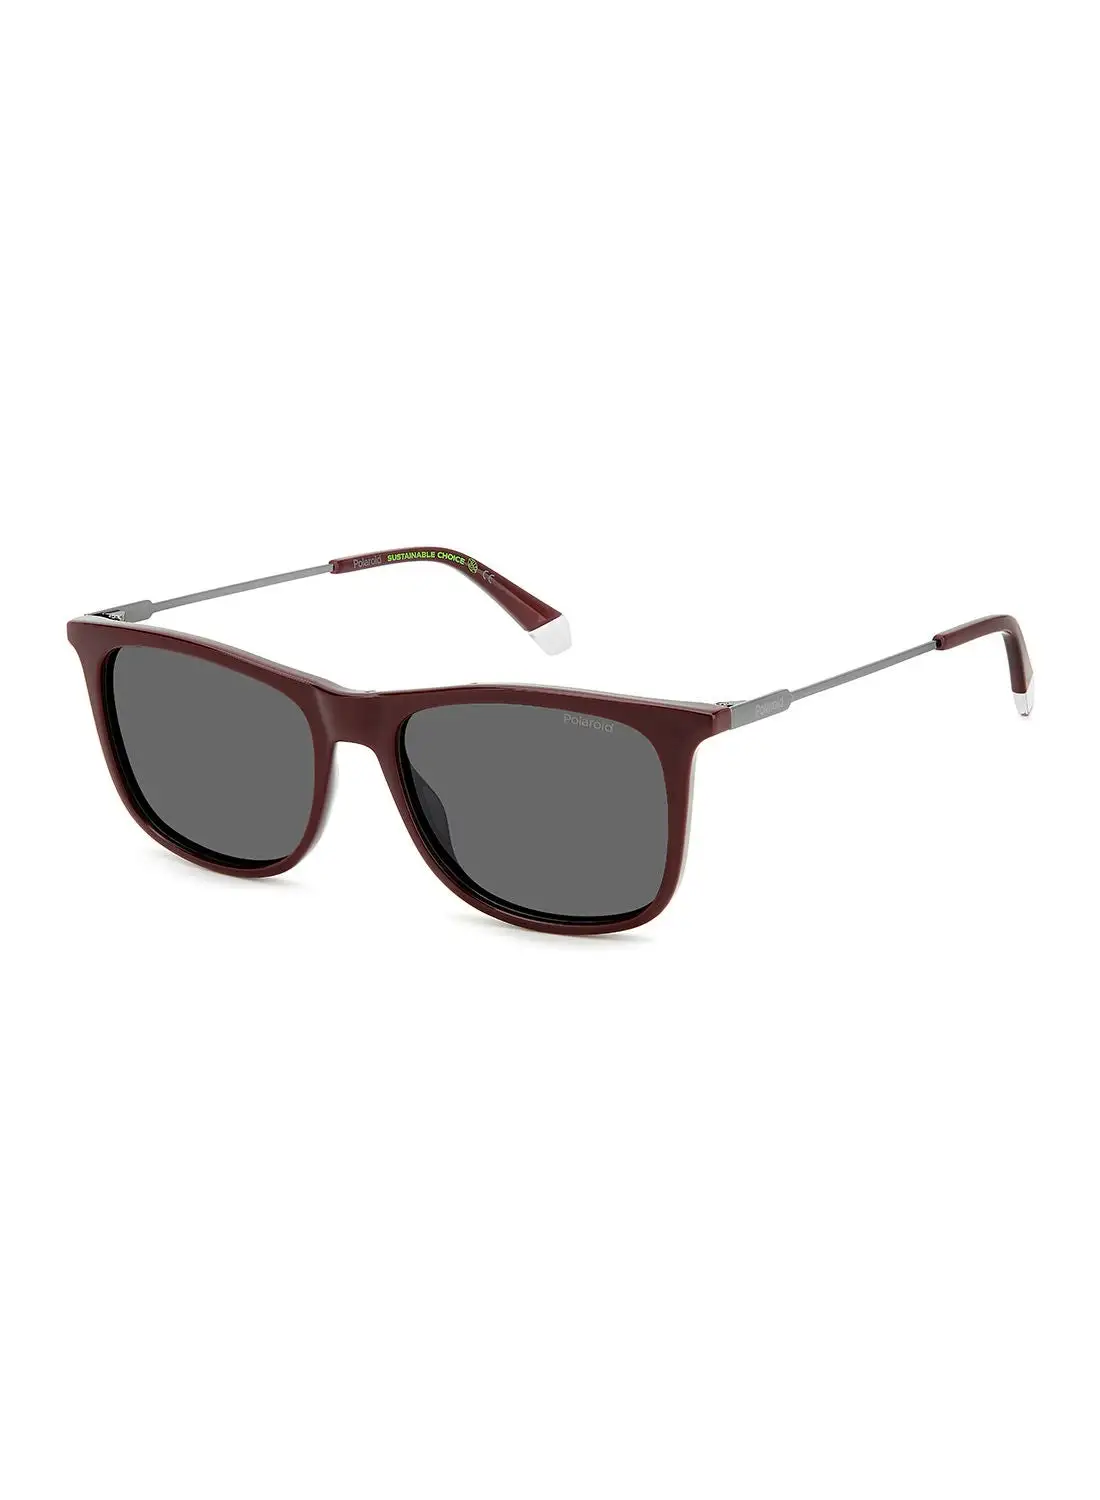 Polaroid Men's UV Protection Rectangular Sunglasses - Pld 4145/S/X Burgundy 55 - Lens Size: 55 Mm